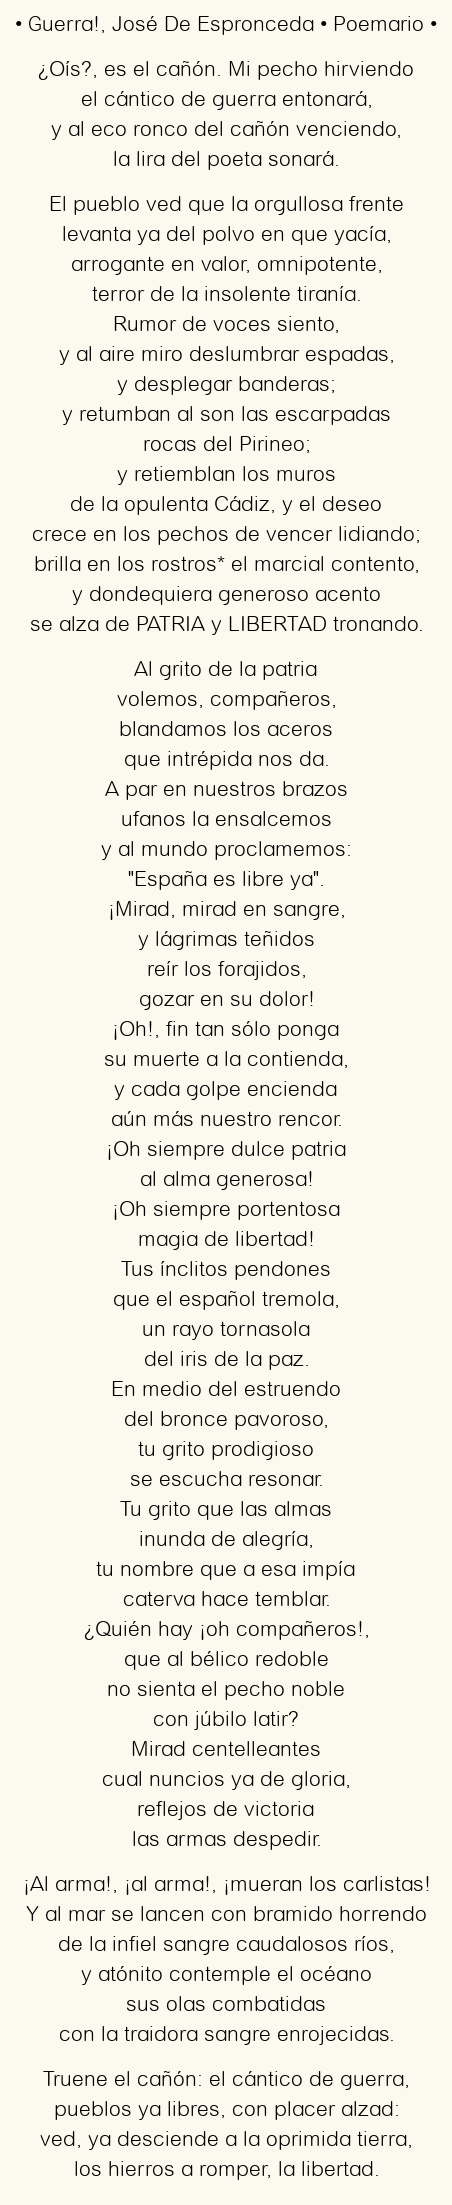 Imagen con el poema Guerra!, por José De Espronceda